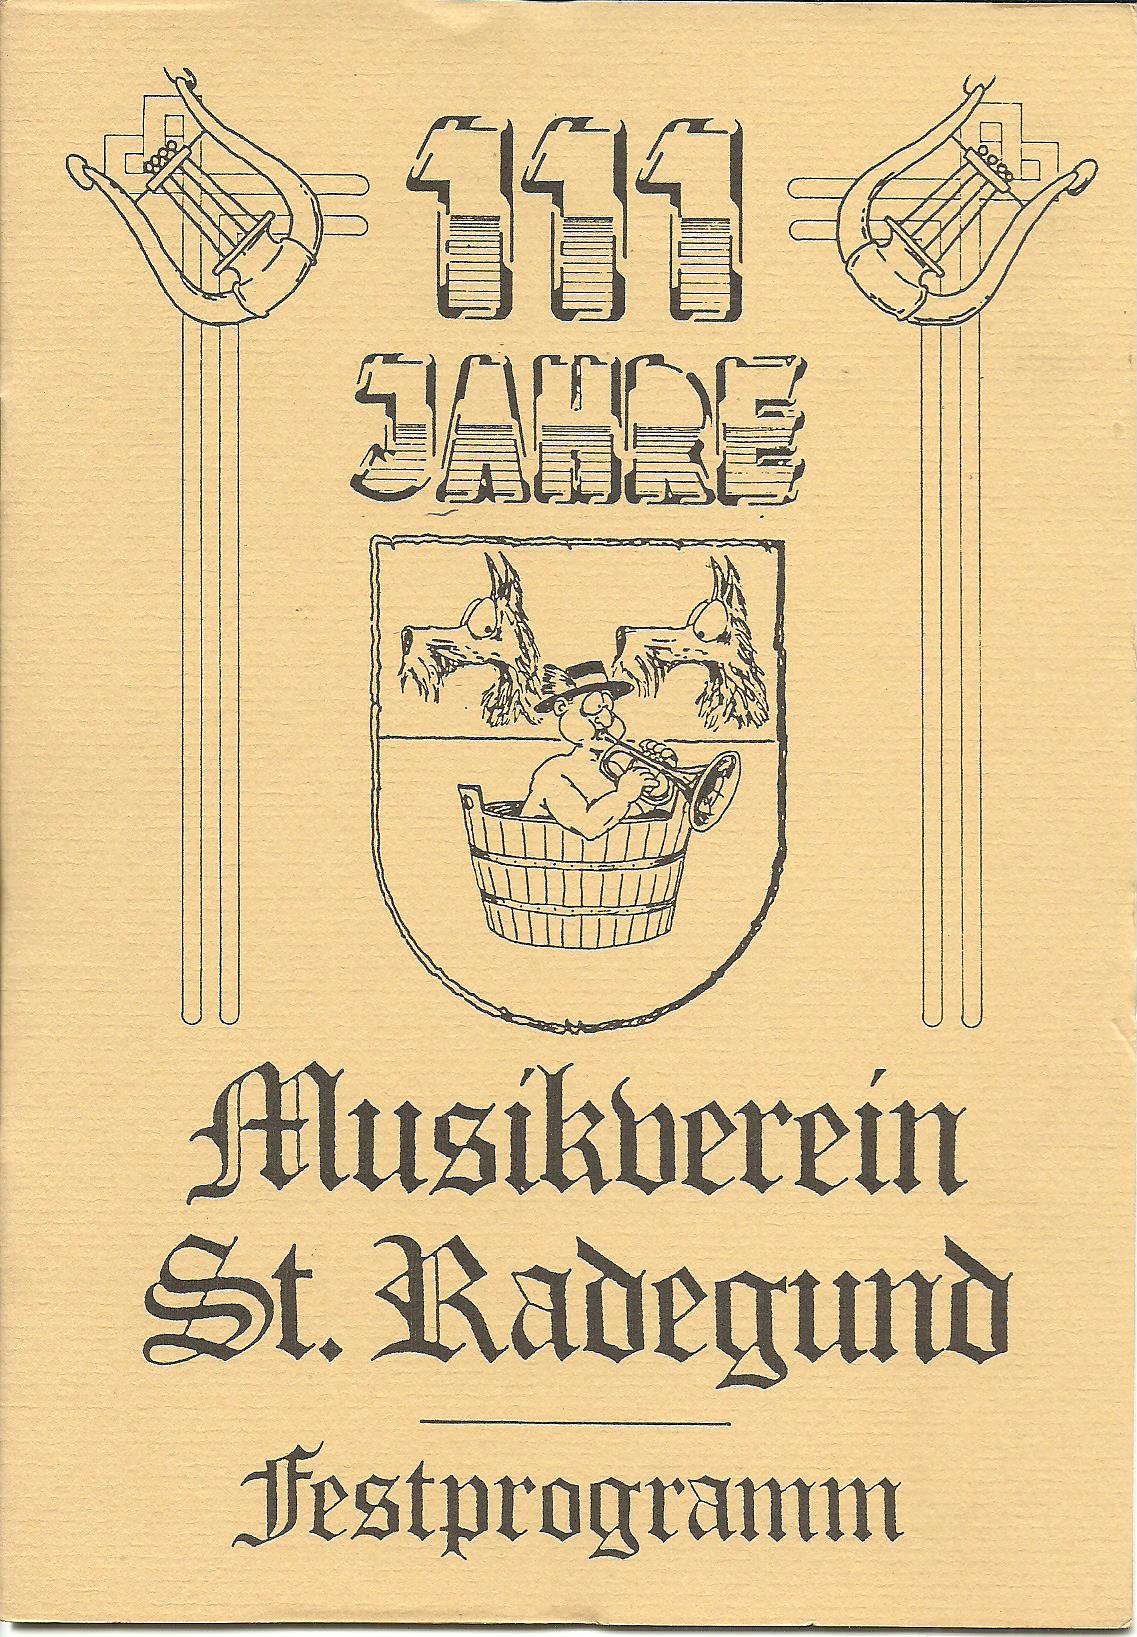 111 Jahre Musikverein St. Radegund - Festprogramm